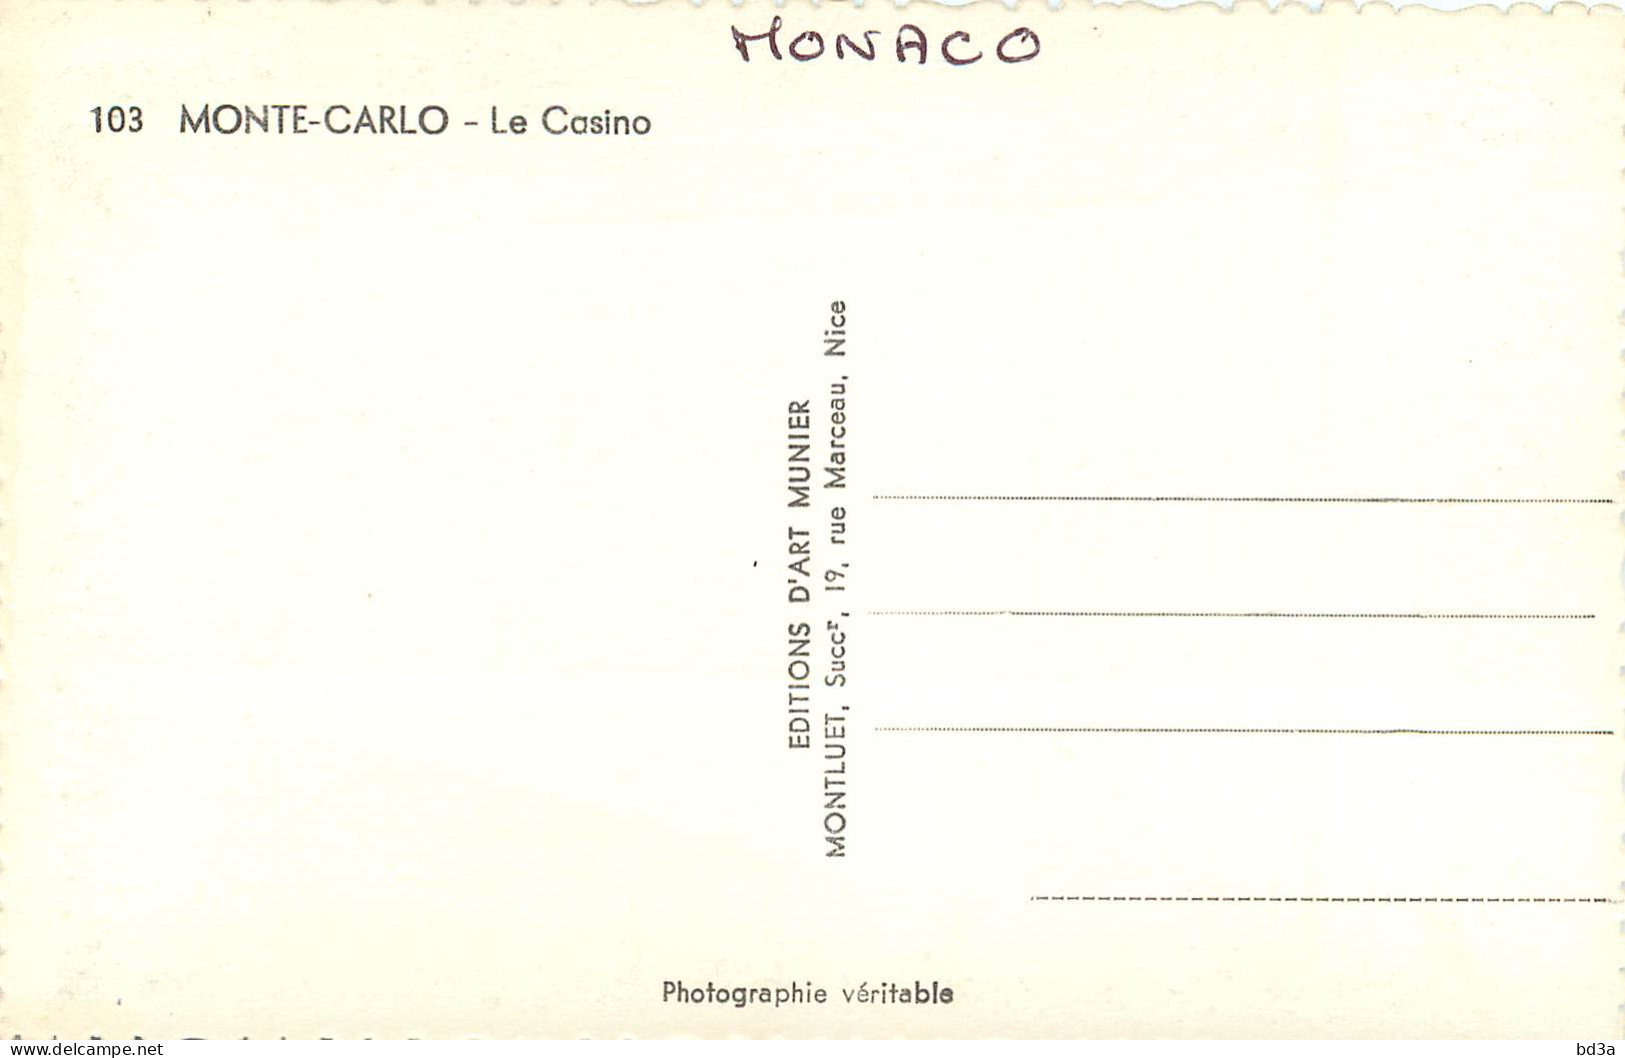  MONACO  MONTE CARLO  LE CASINO - Casino